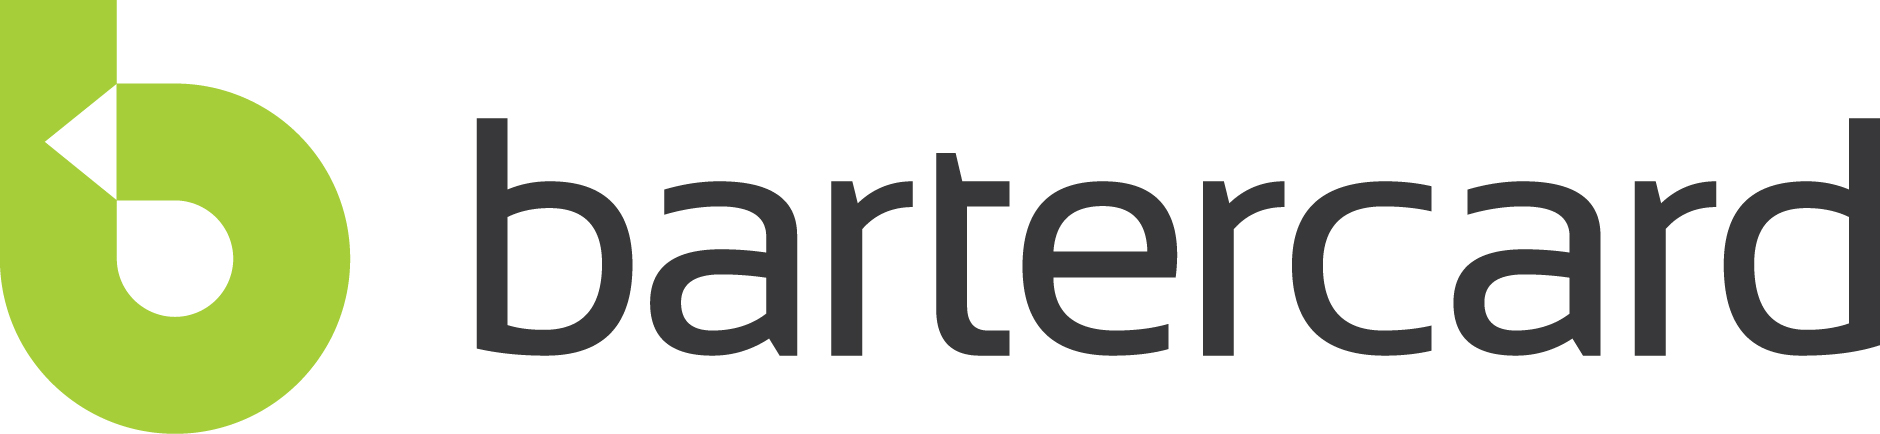 Bartercard Logo photo - 1